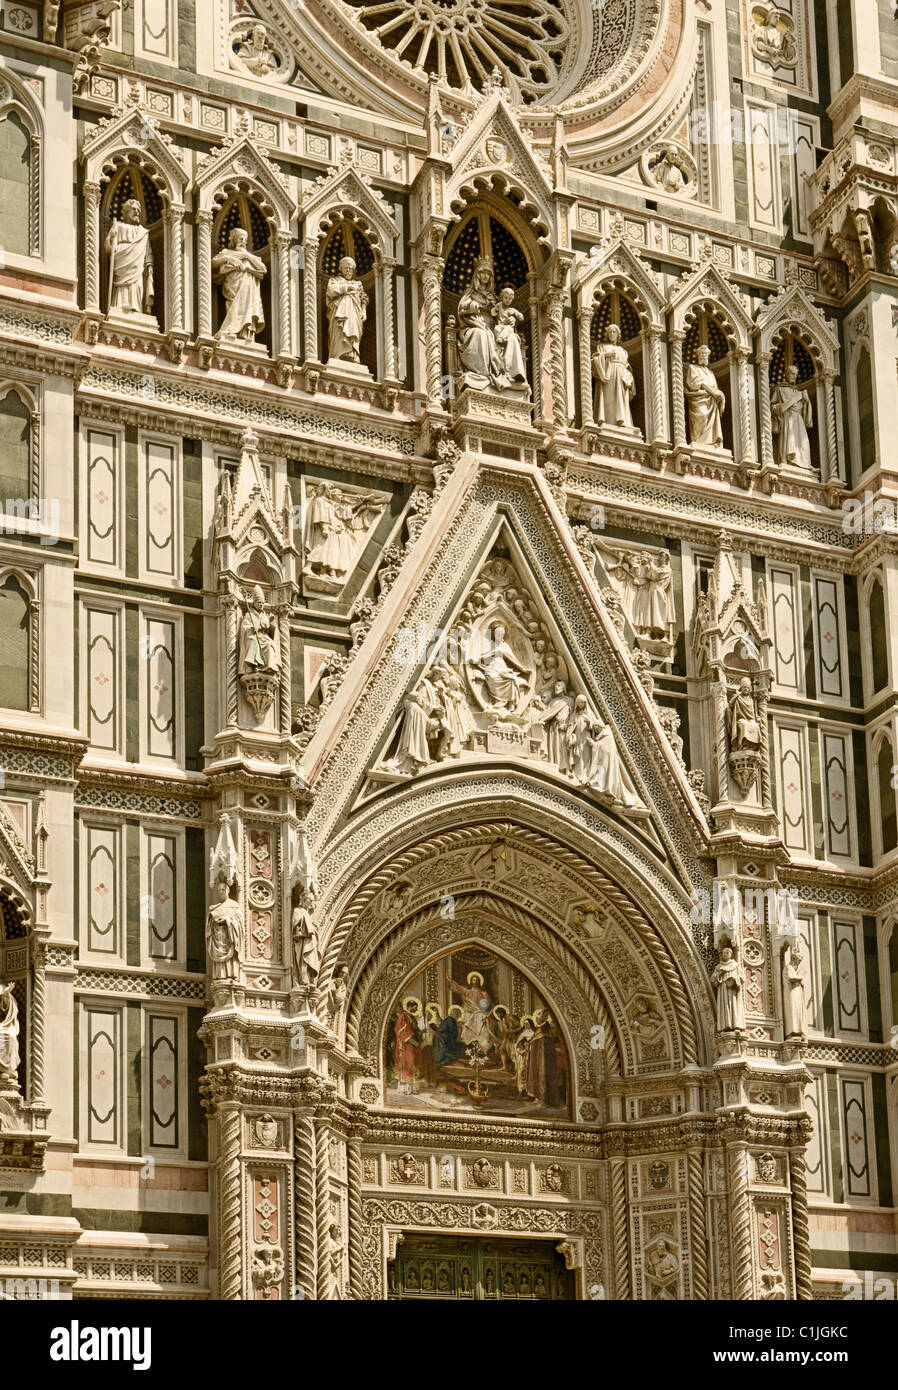 Florenz, Italien. Kathedrale von Santa Maria del Fiore oder der Dom, von der Piazza San Giovanni gesehen. Fassade im Jahre 1887 hinzugefügt. Stockfoto